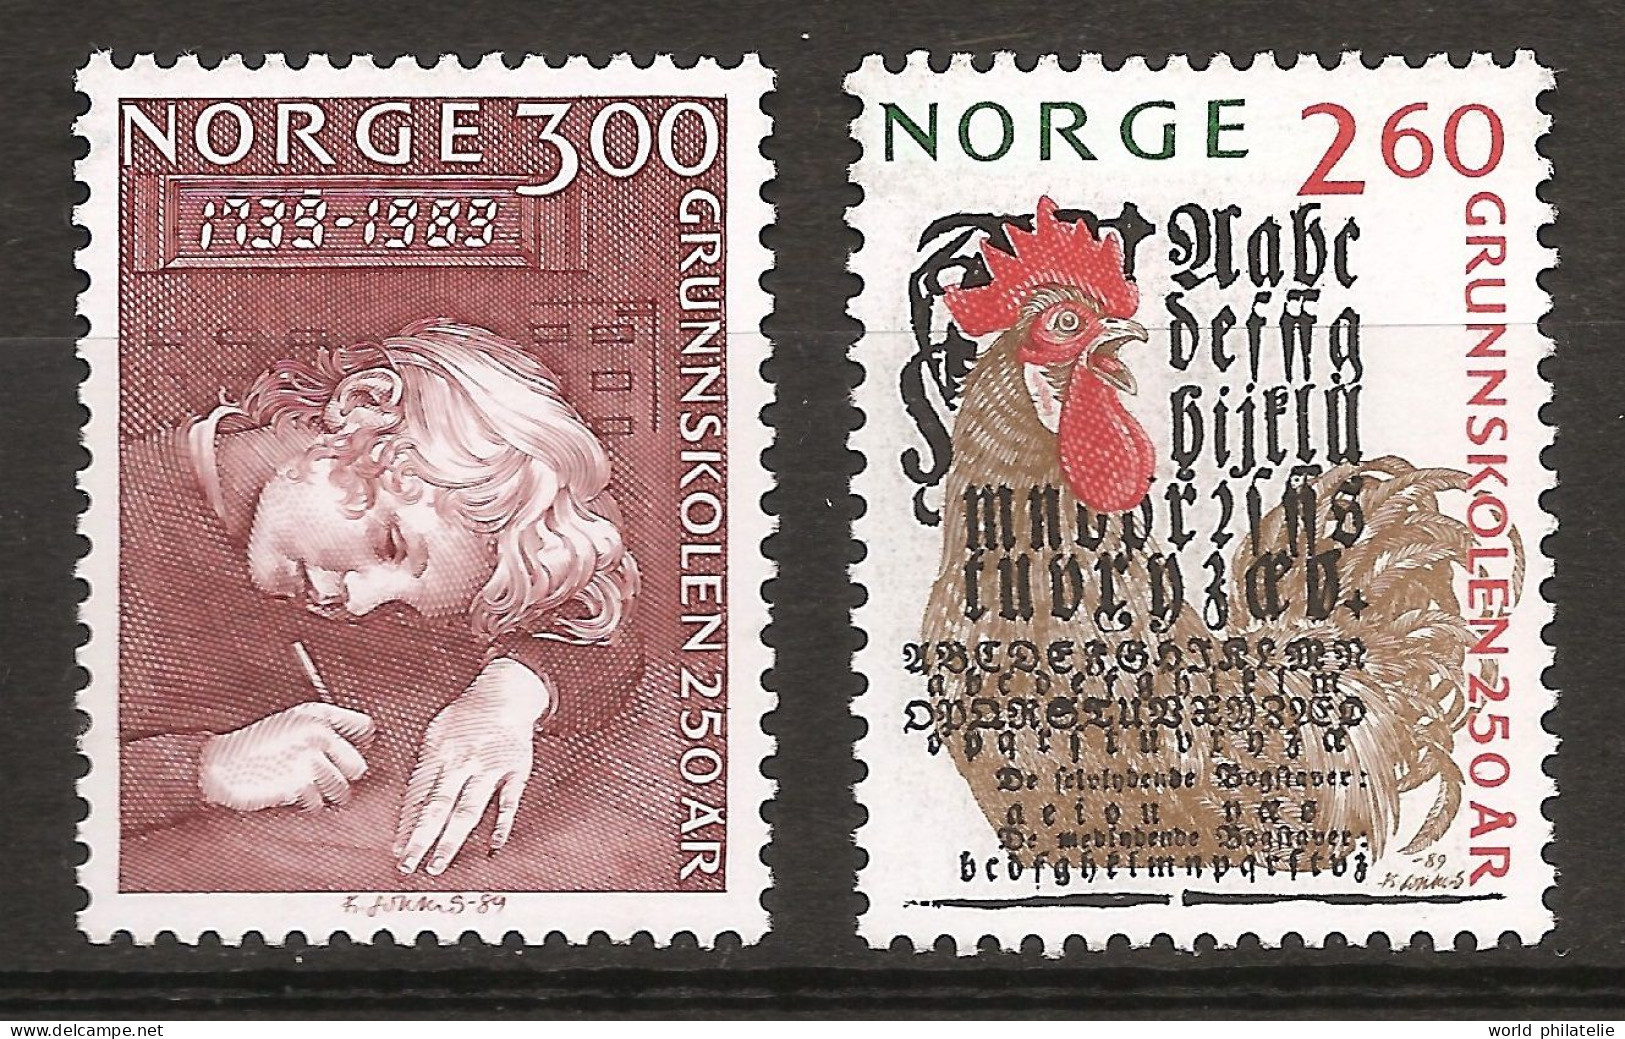 Norvège Norge 1989 N° 978 / 9 ** Ecole Primaire, Page De Couverture, Abécédaire, Coq, Poule Ecriture Calligraphie Crayon - Ungebraucht